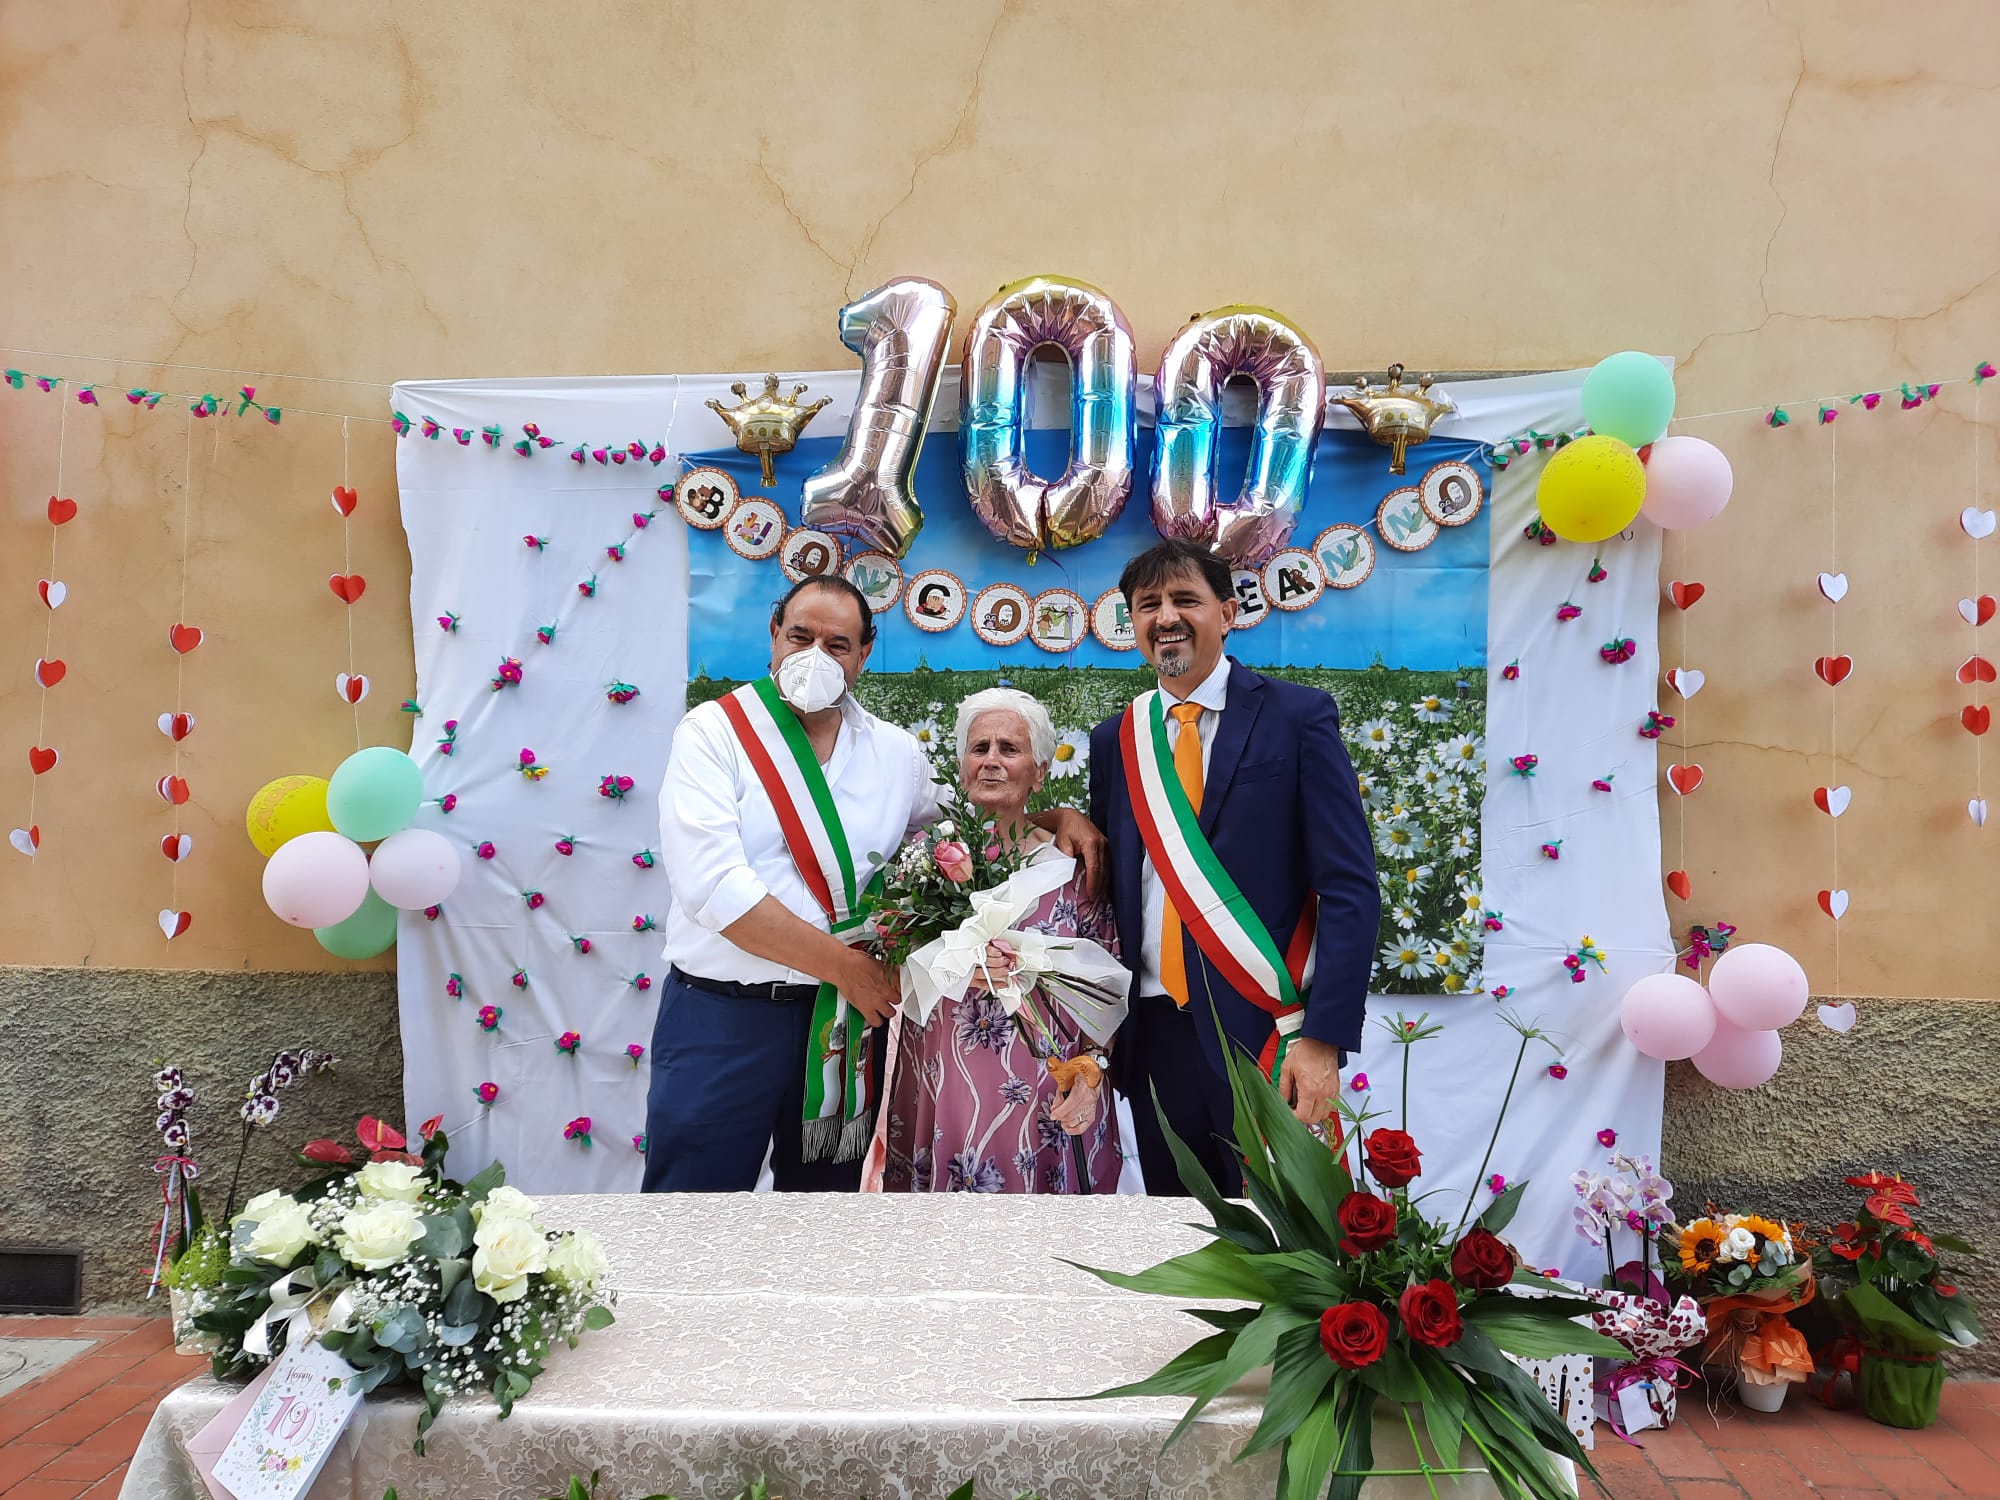 Bruna Lazzeri ha compiuto 100 anni: la festa insieme ai familiari e ai sindaci Toni e Caleri.